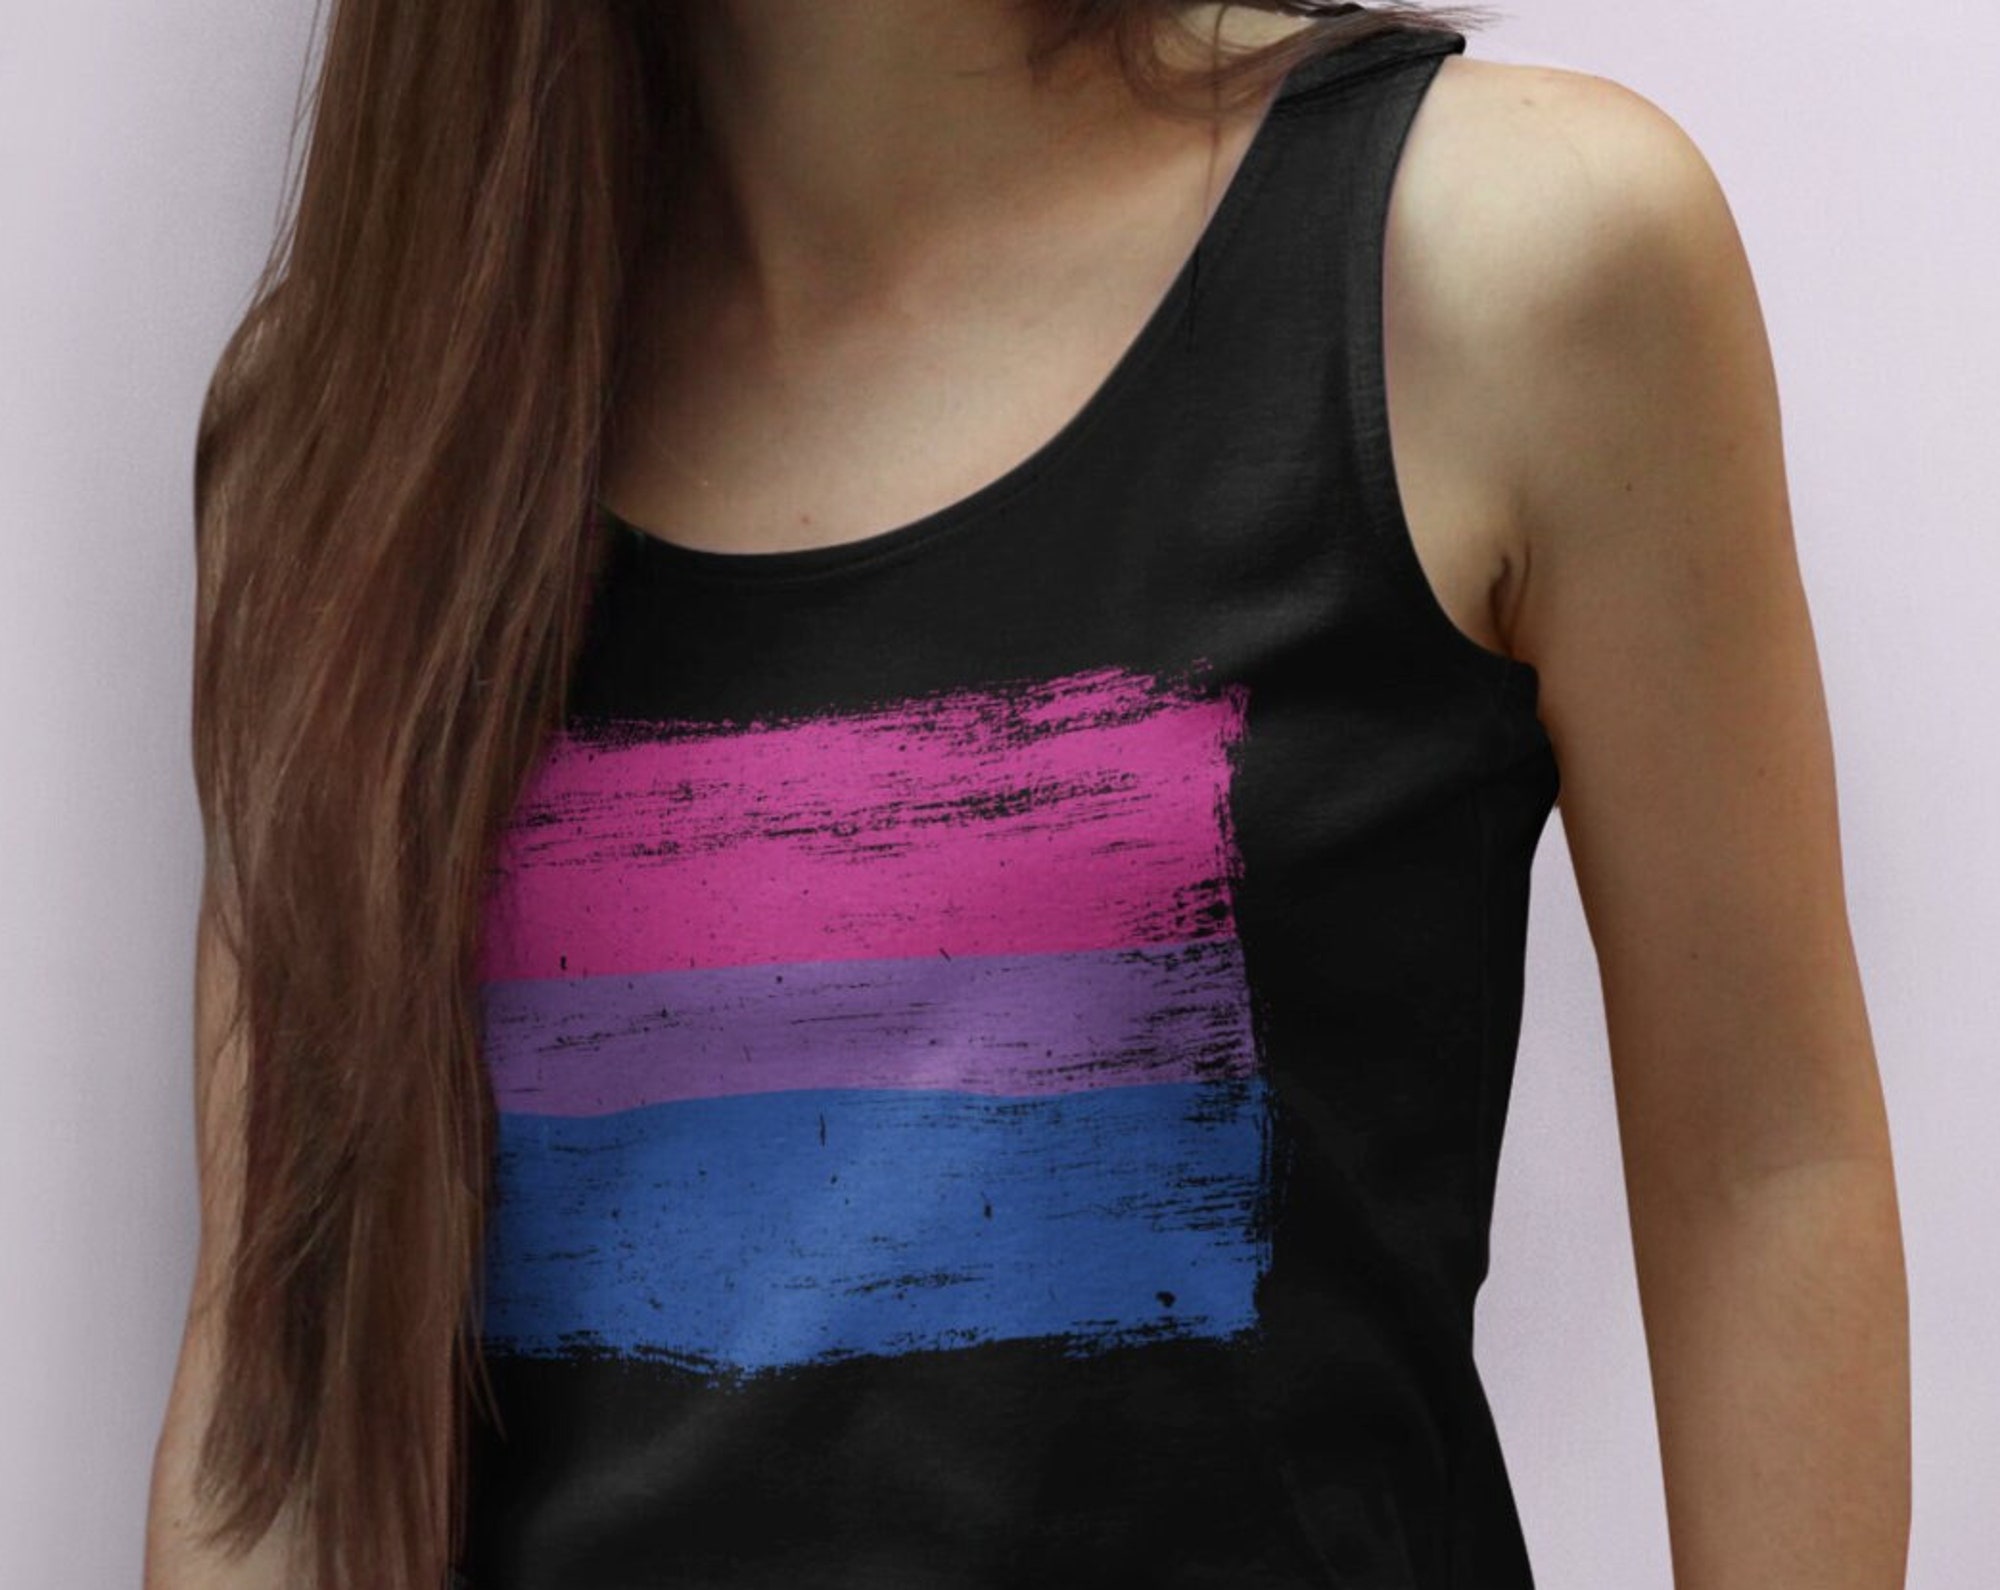 Bisexual Pride Flag Tank Top - Vintage Distressed Painted Flag